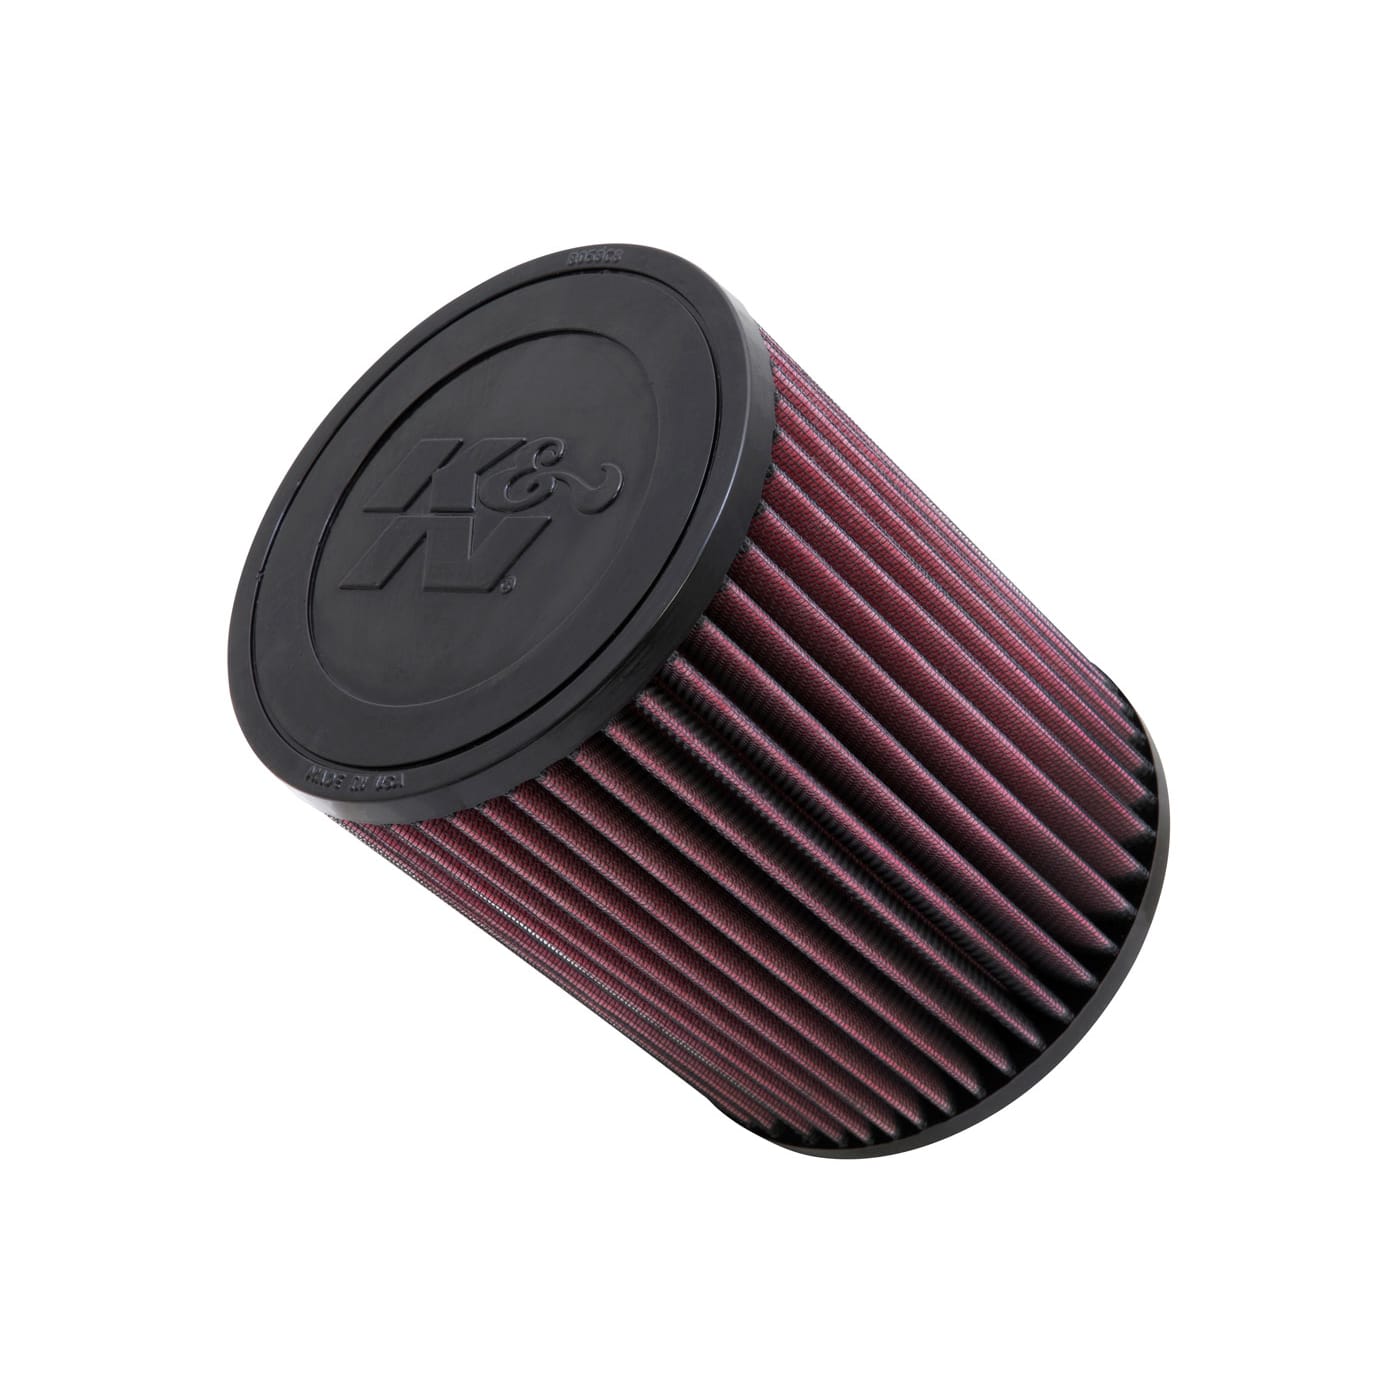 K&n filtro para Mercedes-Benz CLS tipo c219 filtro de aire filtro deportivos filtro intercambio